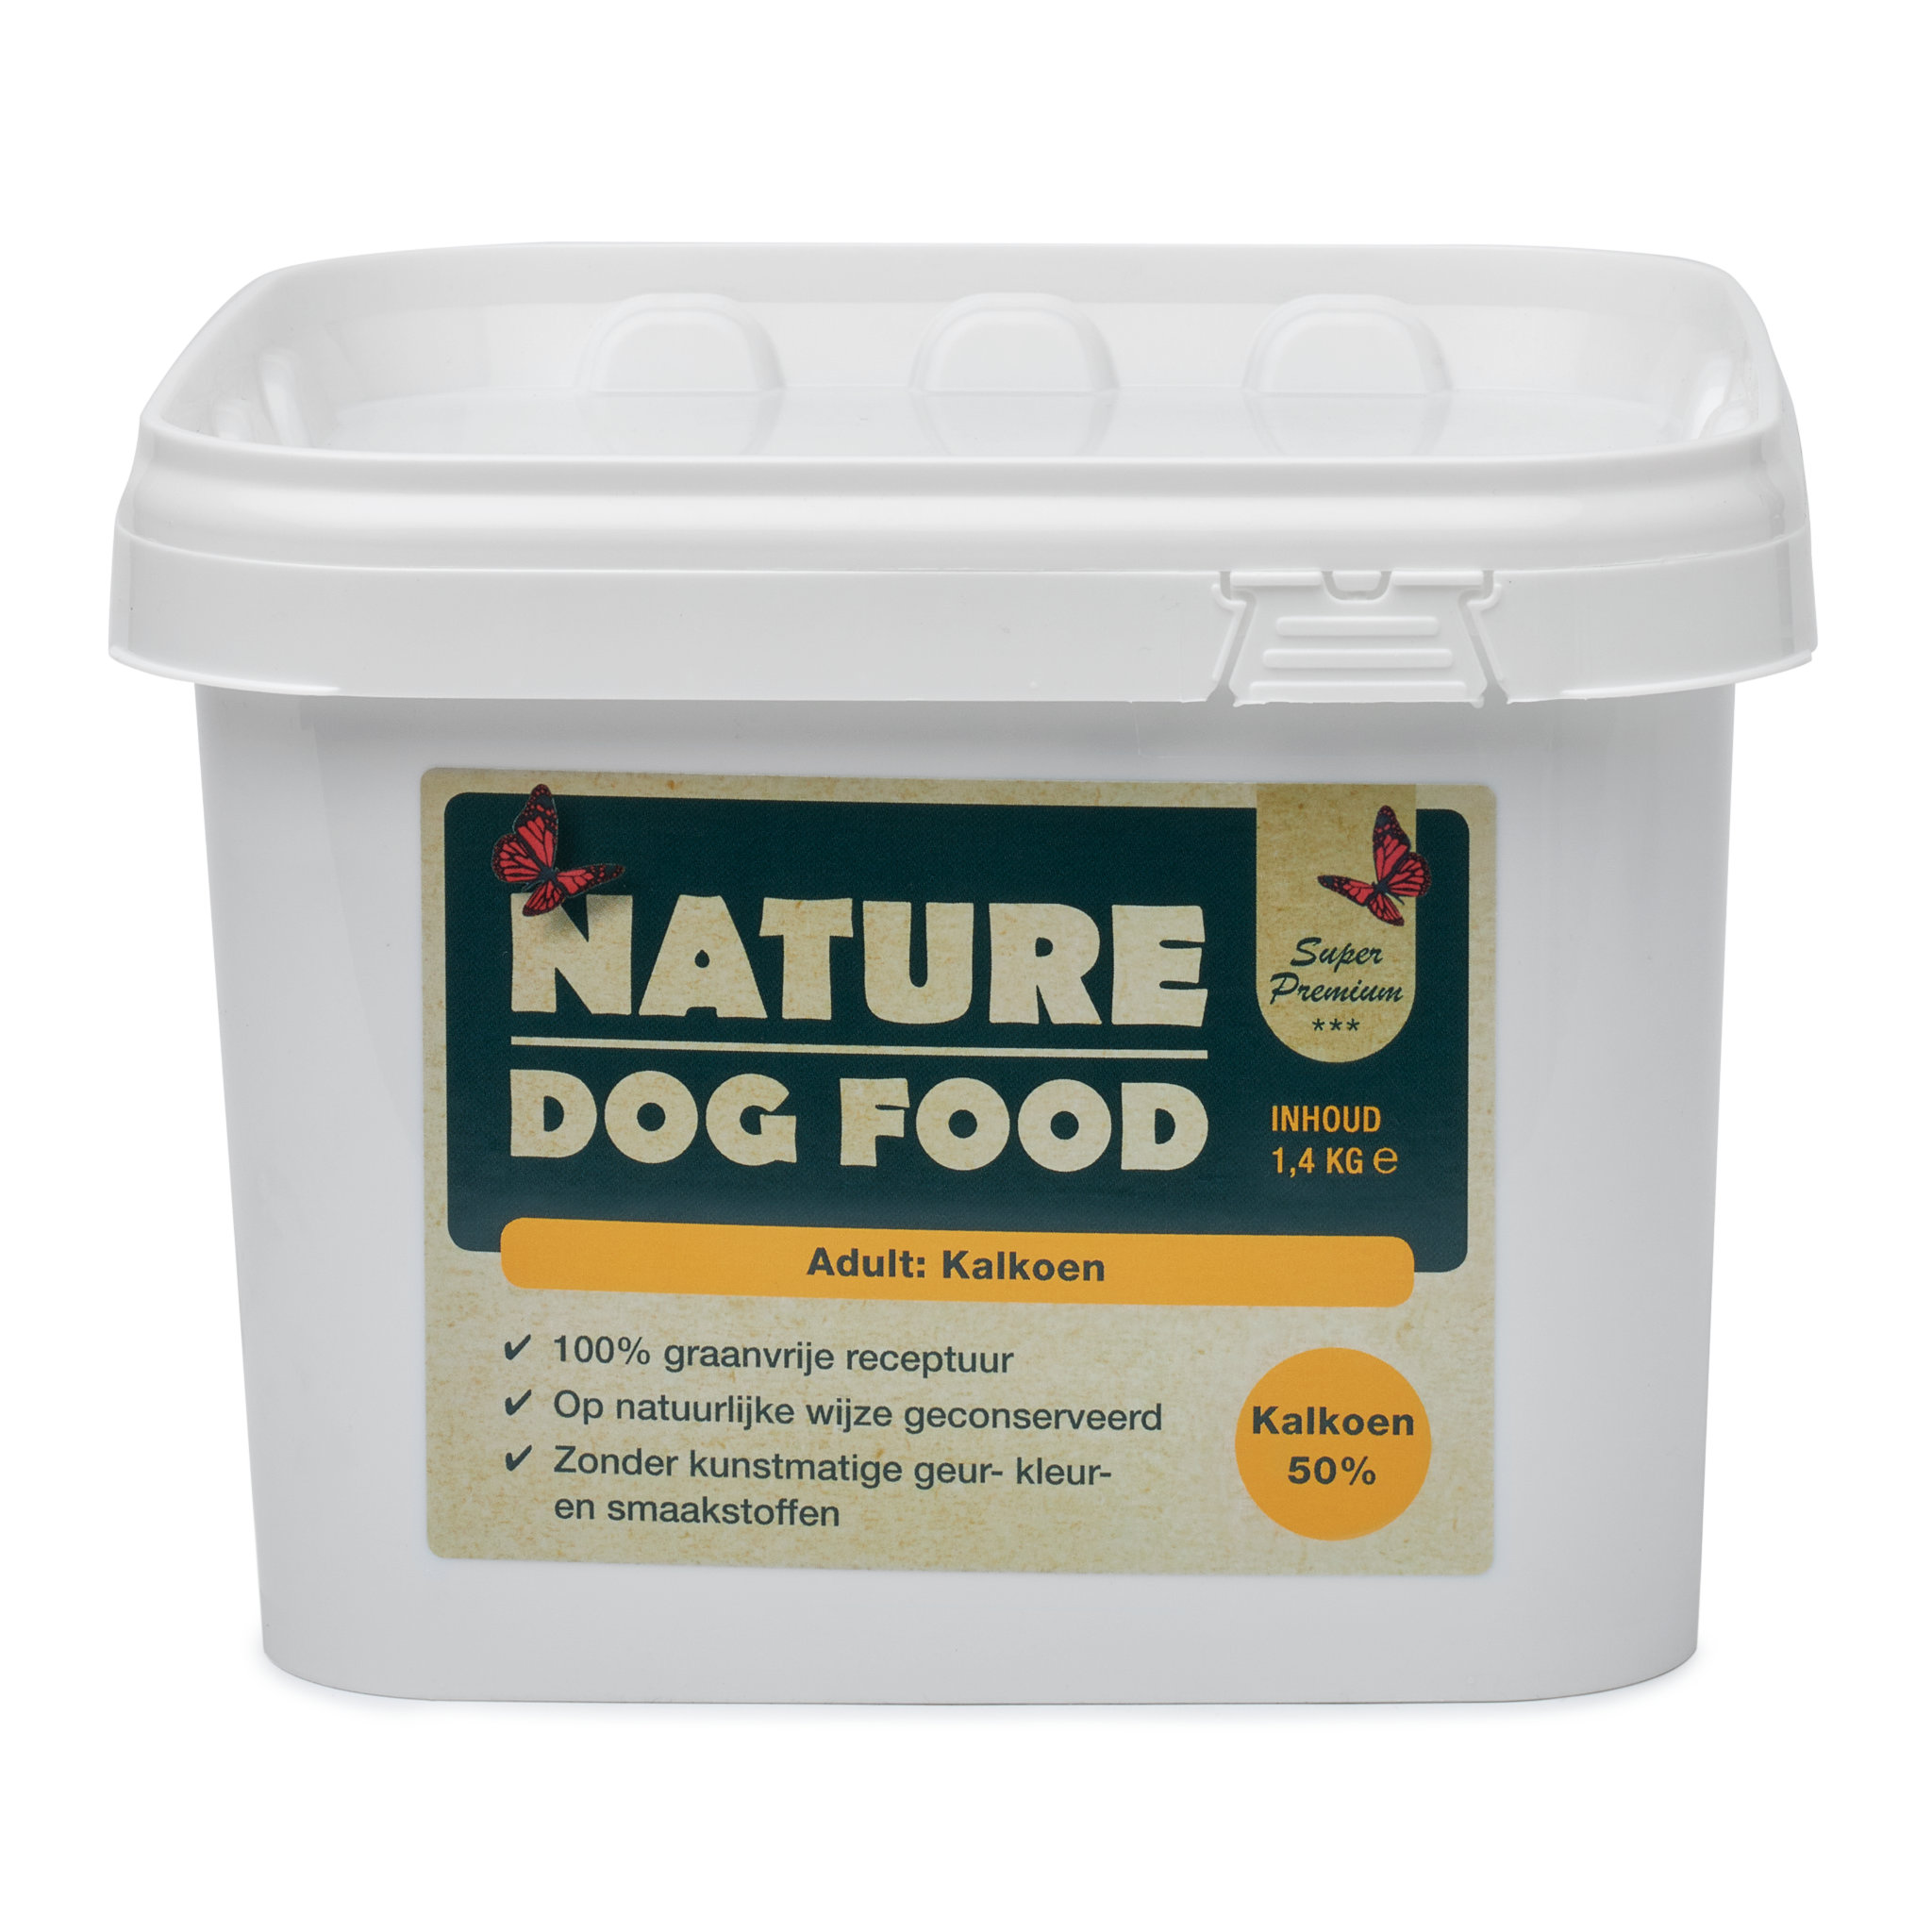 Hondenvoer met kalkoen - Nature Dog Food